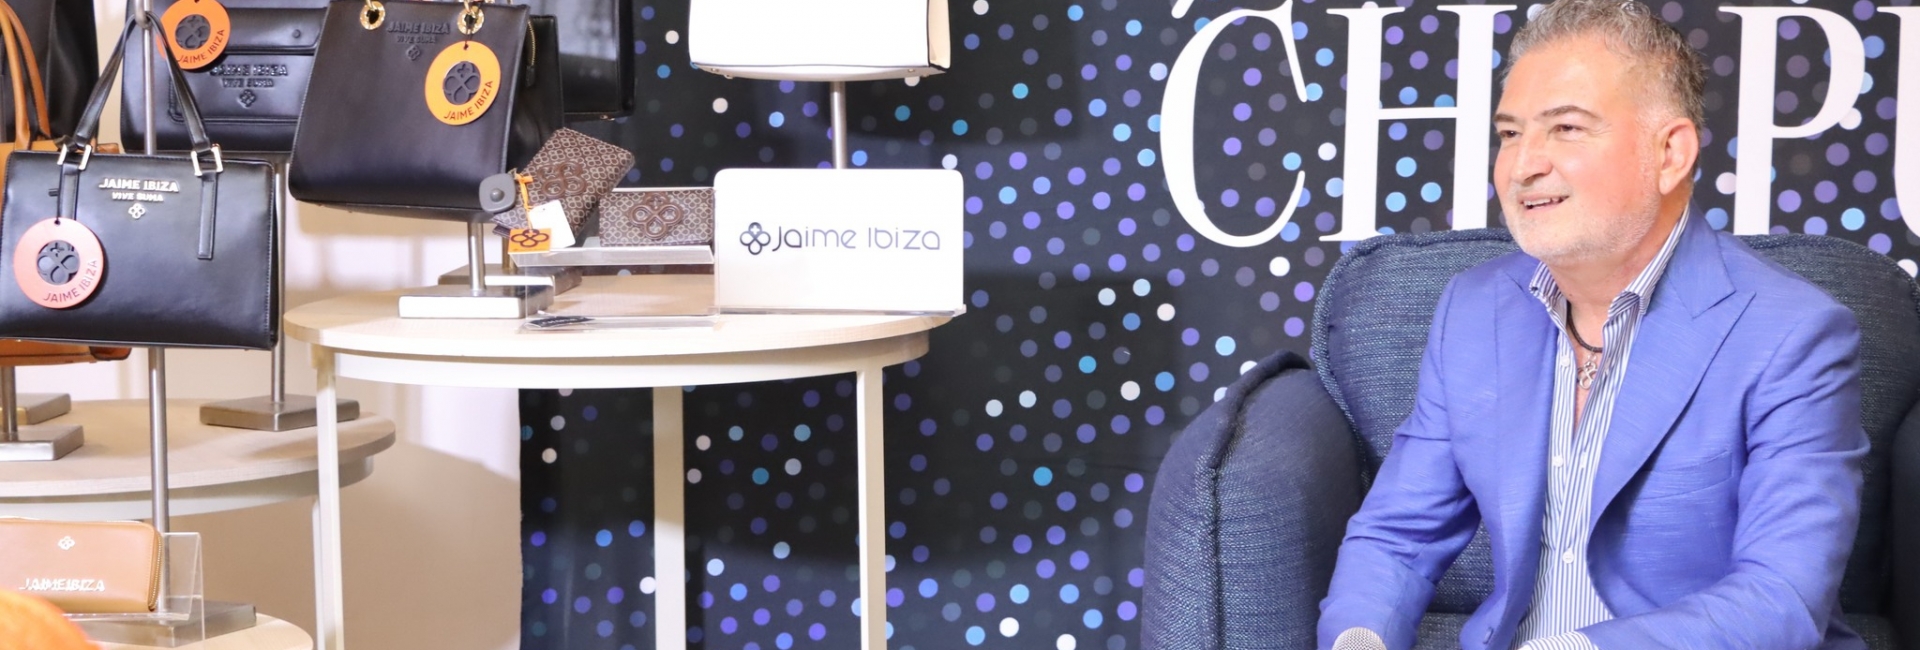 Jaime Ibiza presenta su colección “Vive y Suma”